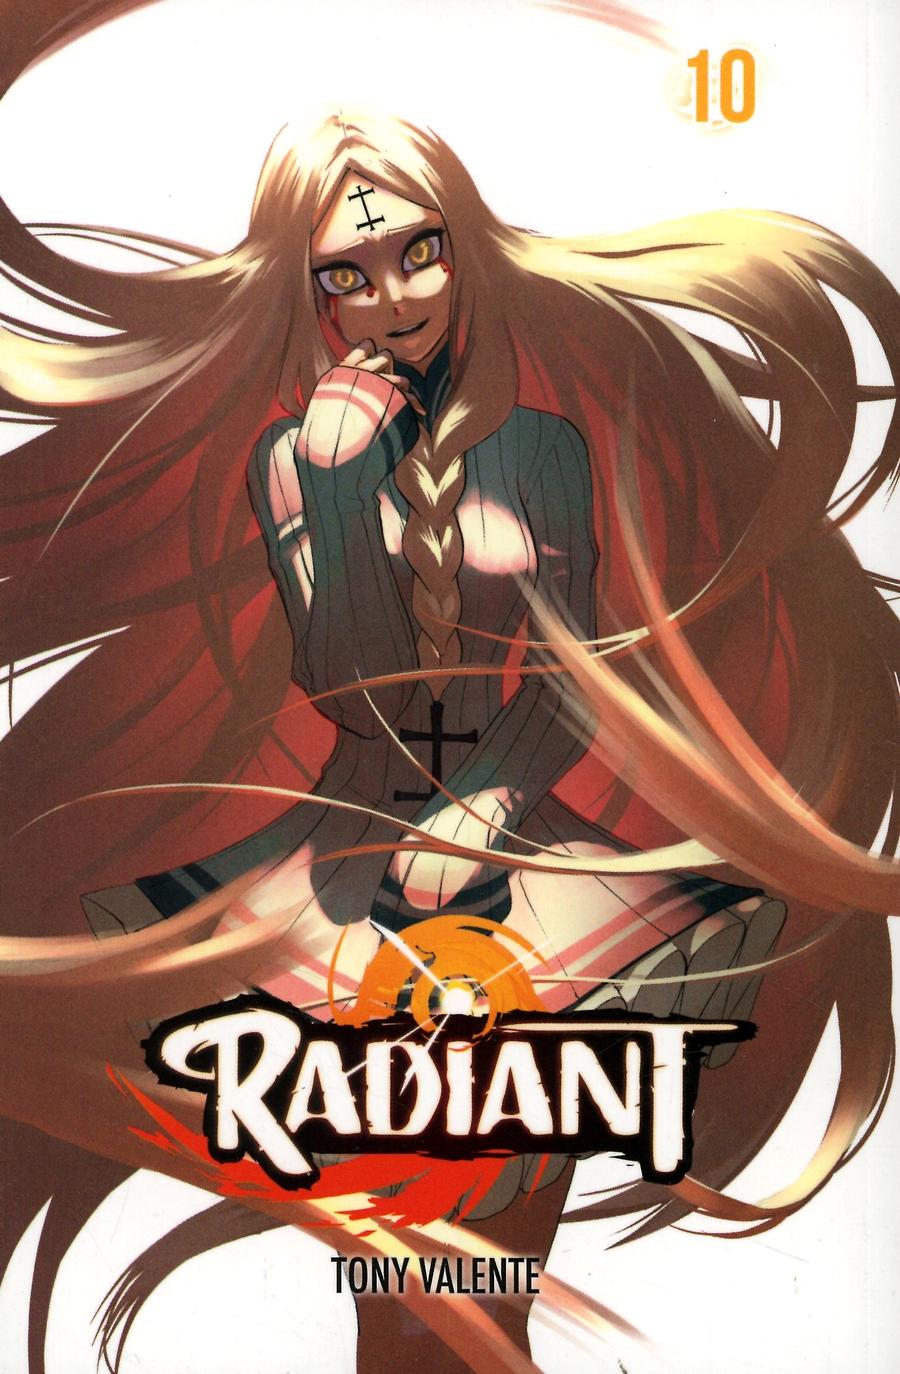 Radiant Vol 10 GN